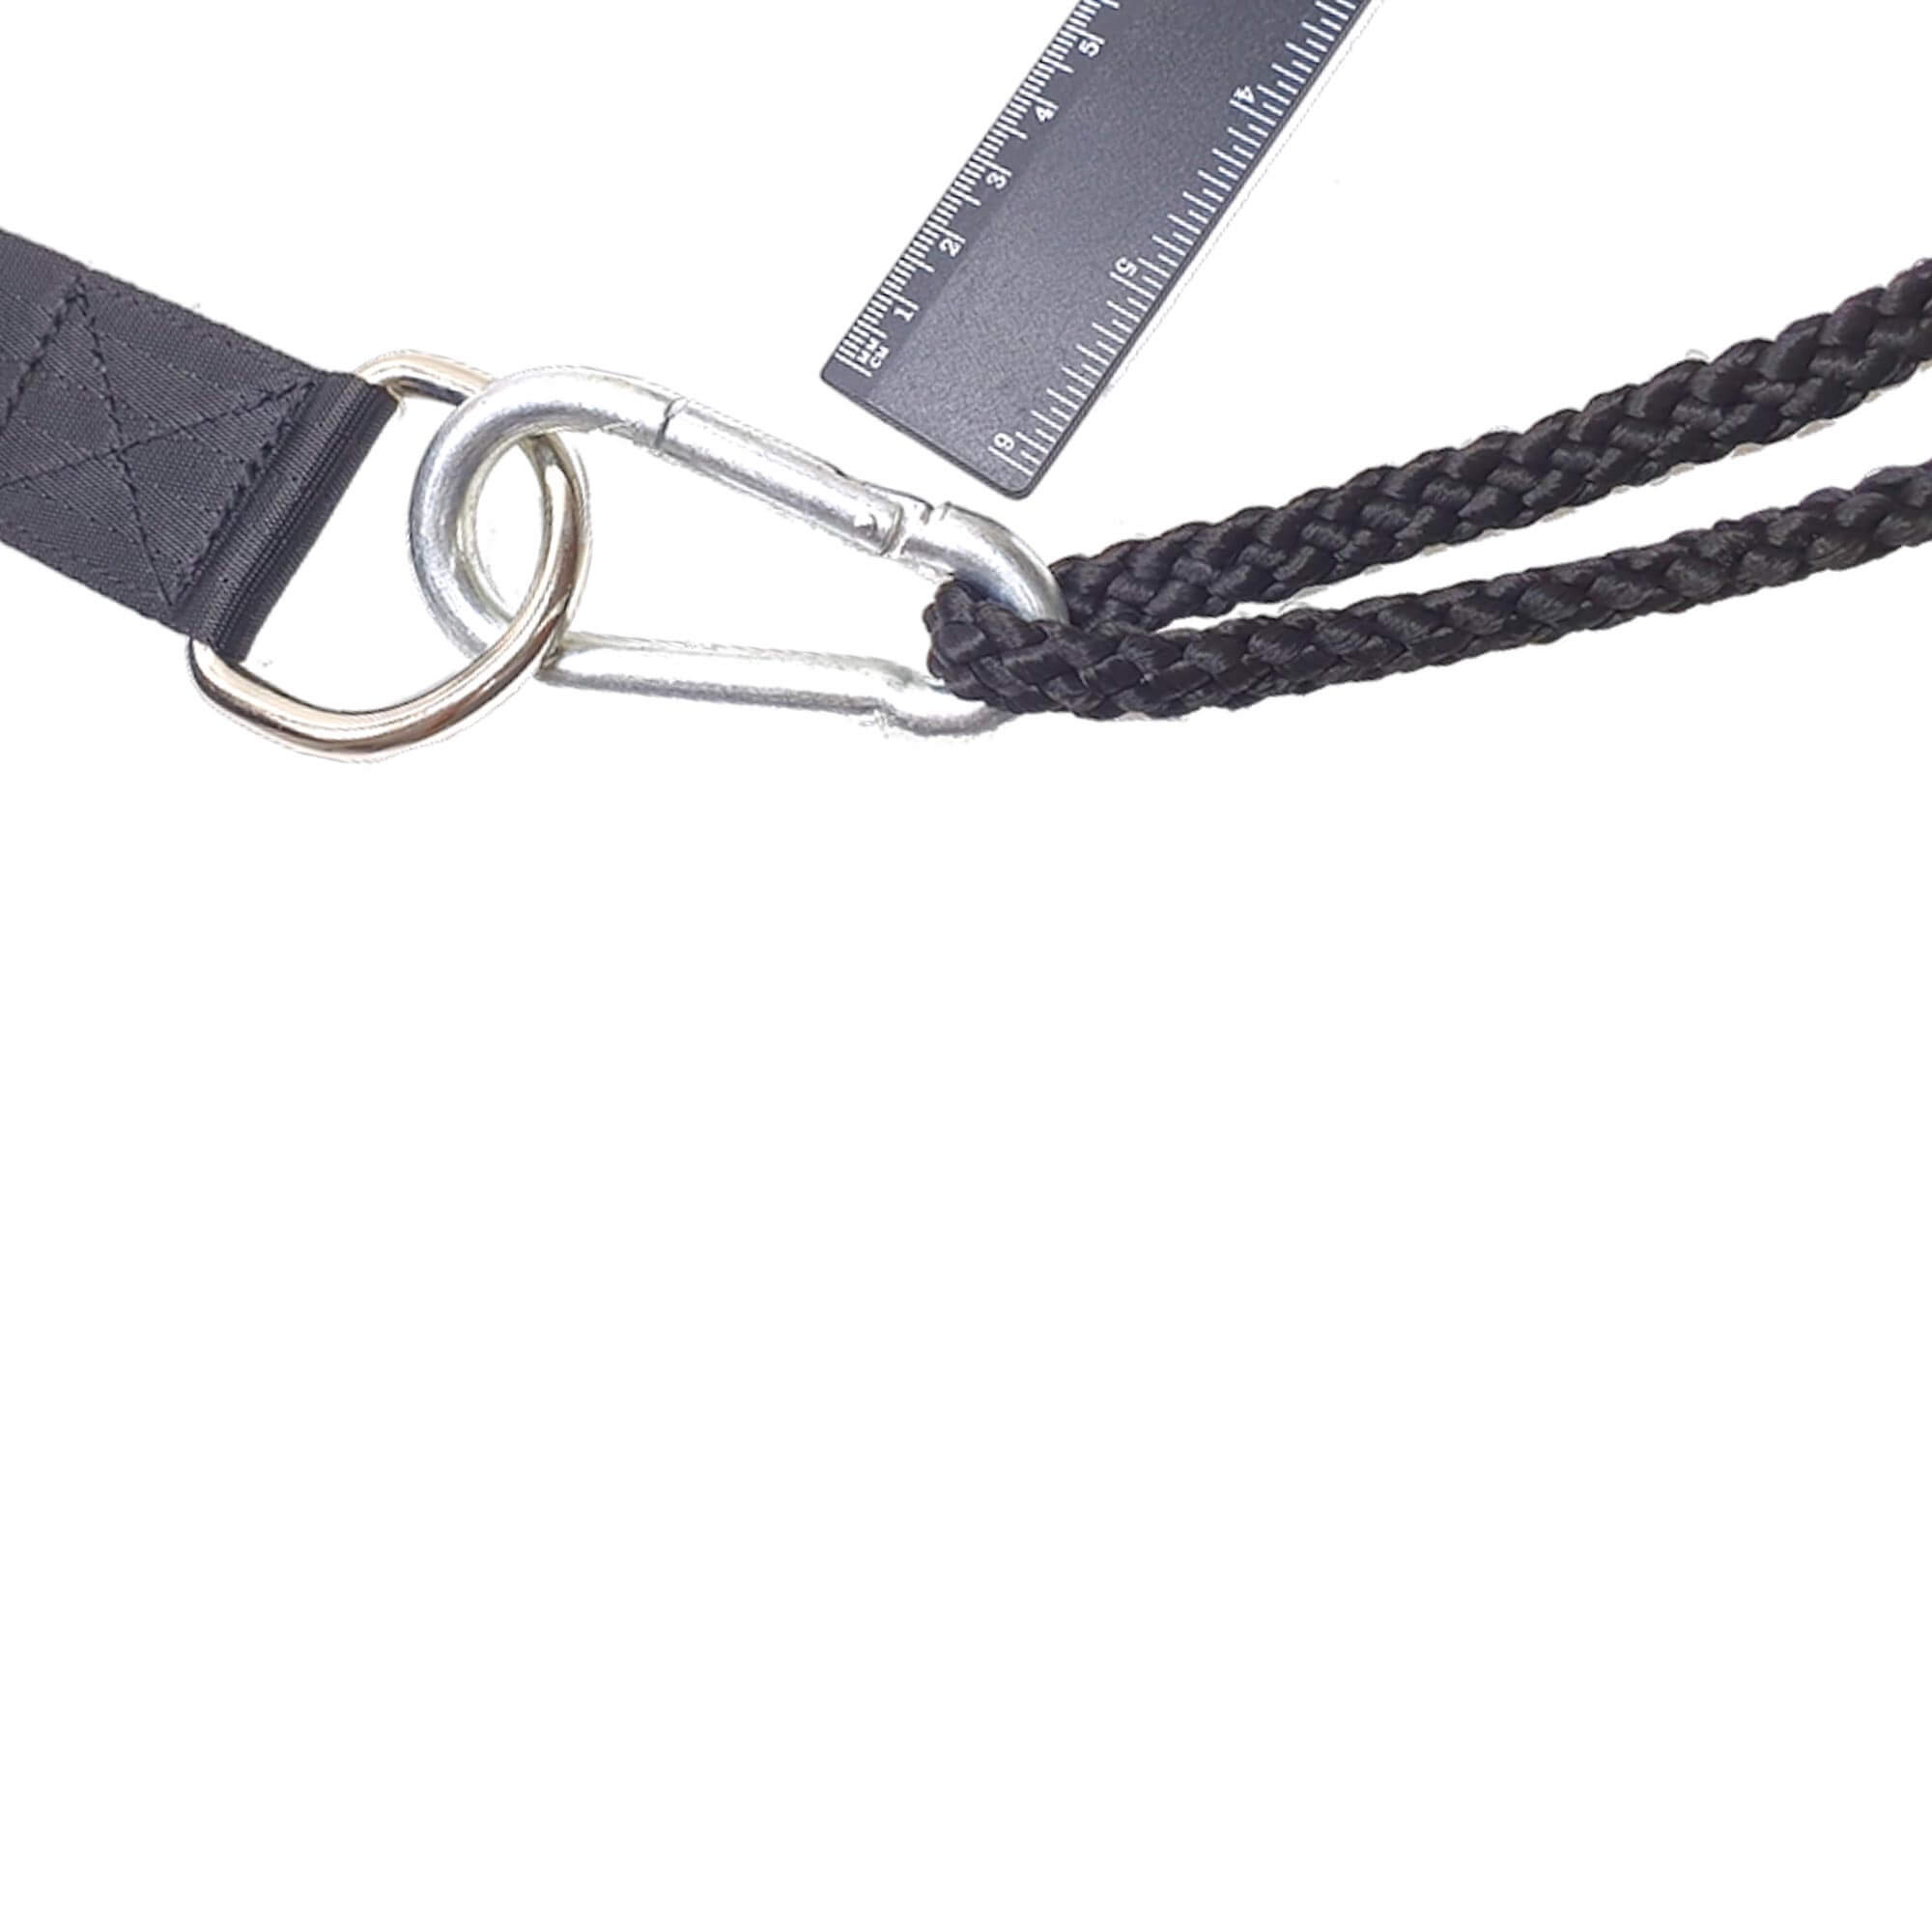 Förstärkt bältes-sele med reflexband och extremt slitstark flätad nylonsnara med avtagbar stål karbinhake.